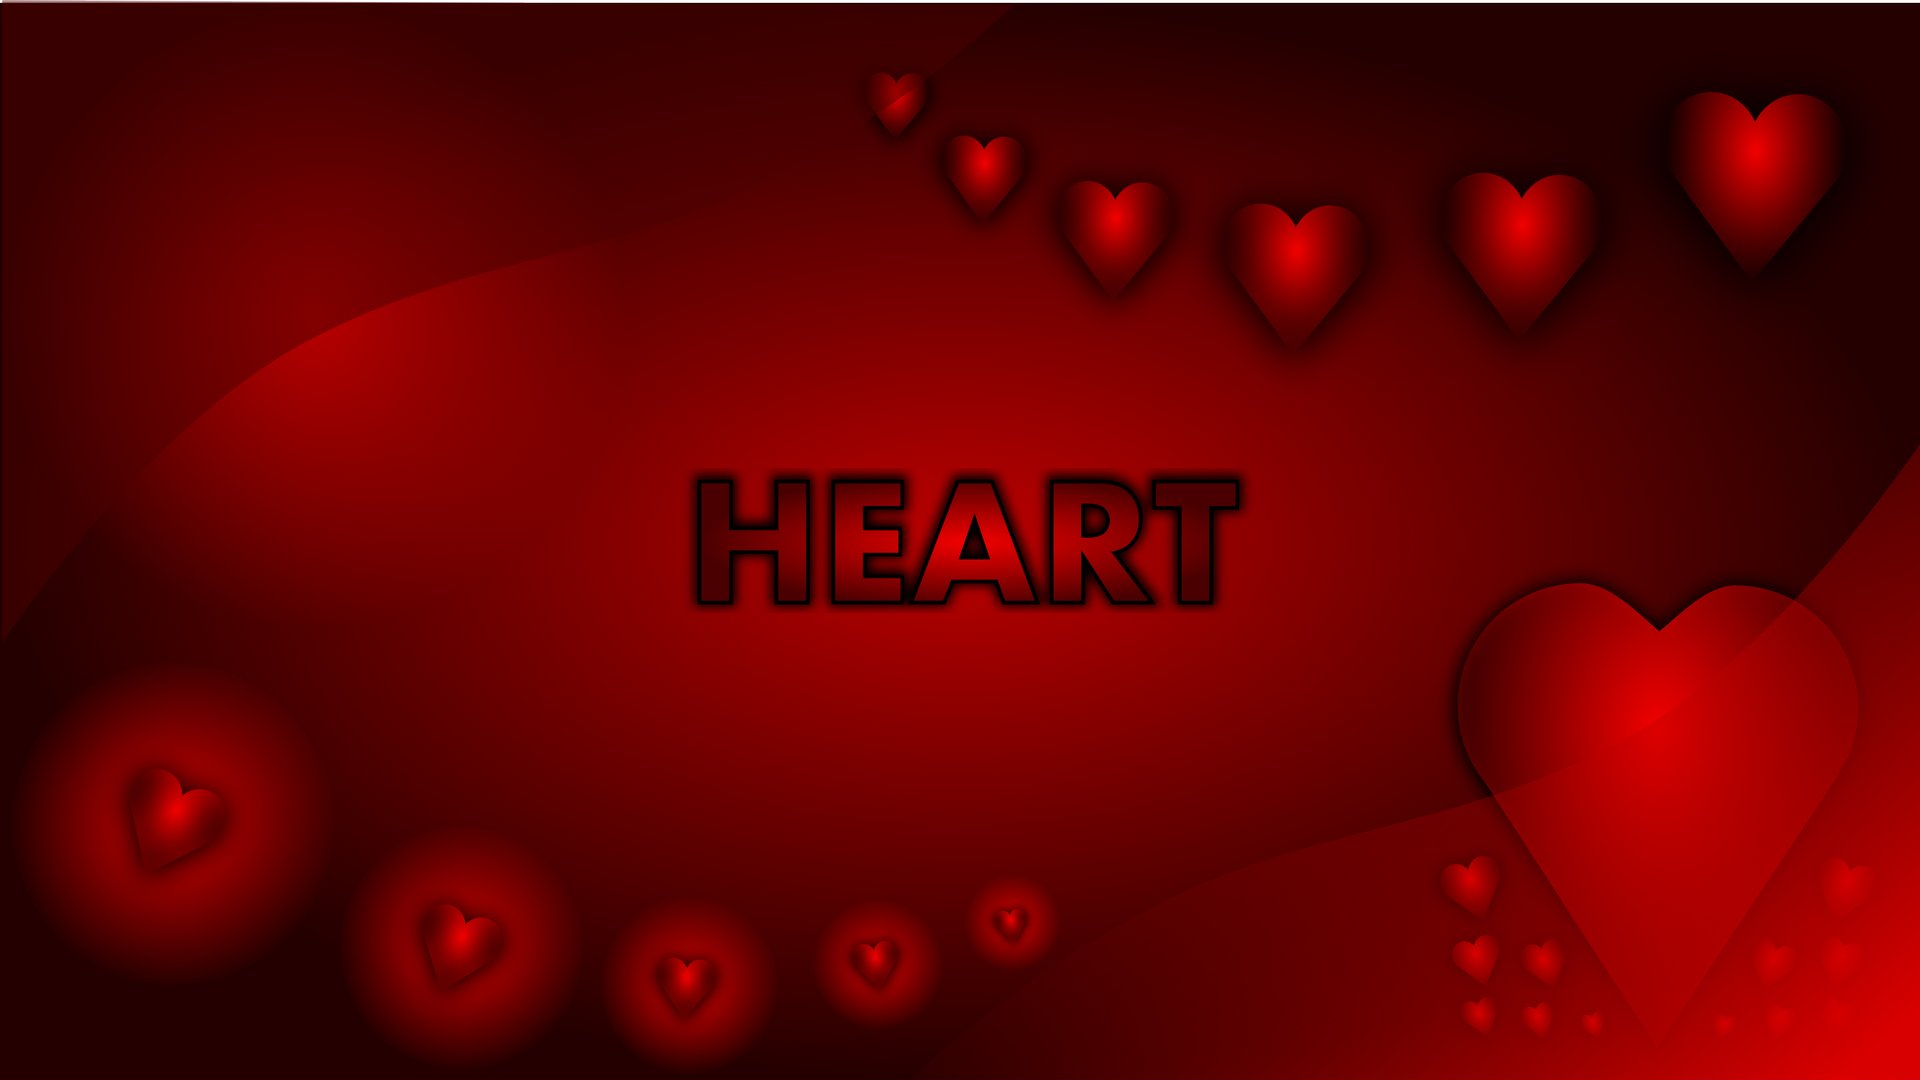 Obrzek, tapeta Valentn srdce, 1920x1080. Wallpaper na pozad PC, mobilu, tabletu